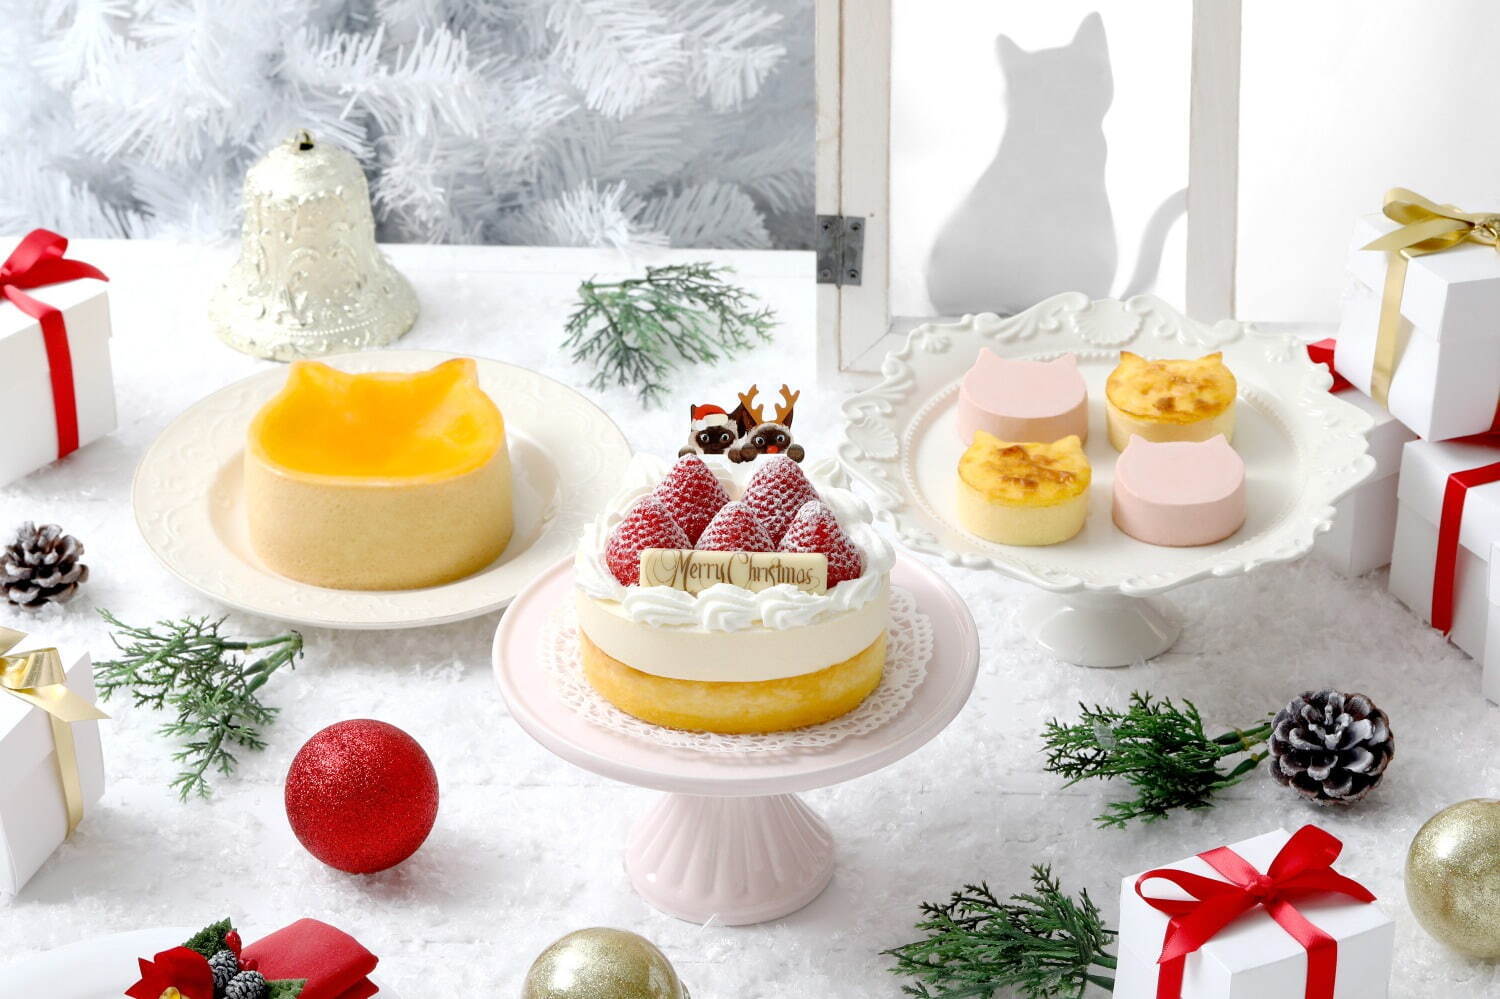 ねこねこチーズケーキ21年クリスマス 雪のようなクリームのせ2層仕立ての ネコ型 チーズケーキ ファッションプレス